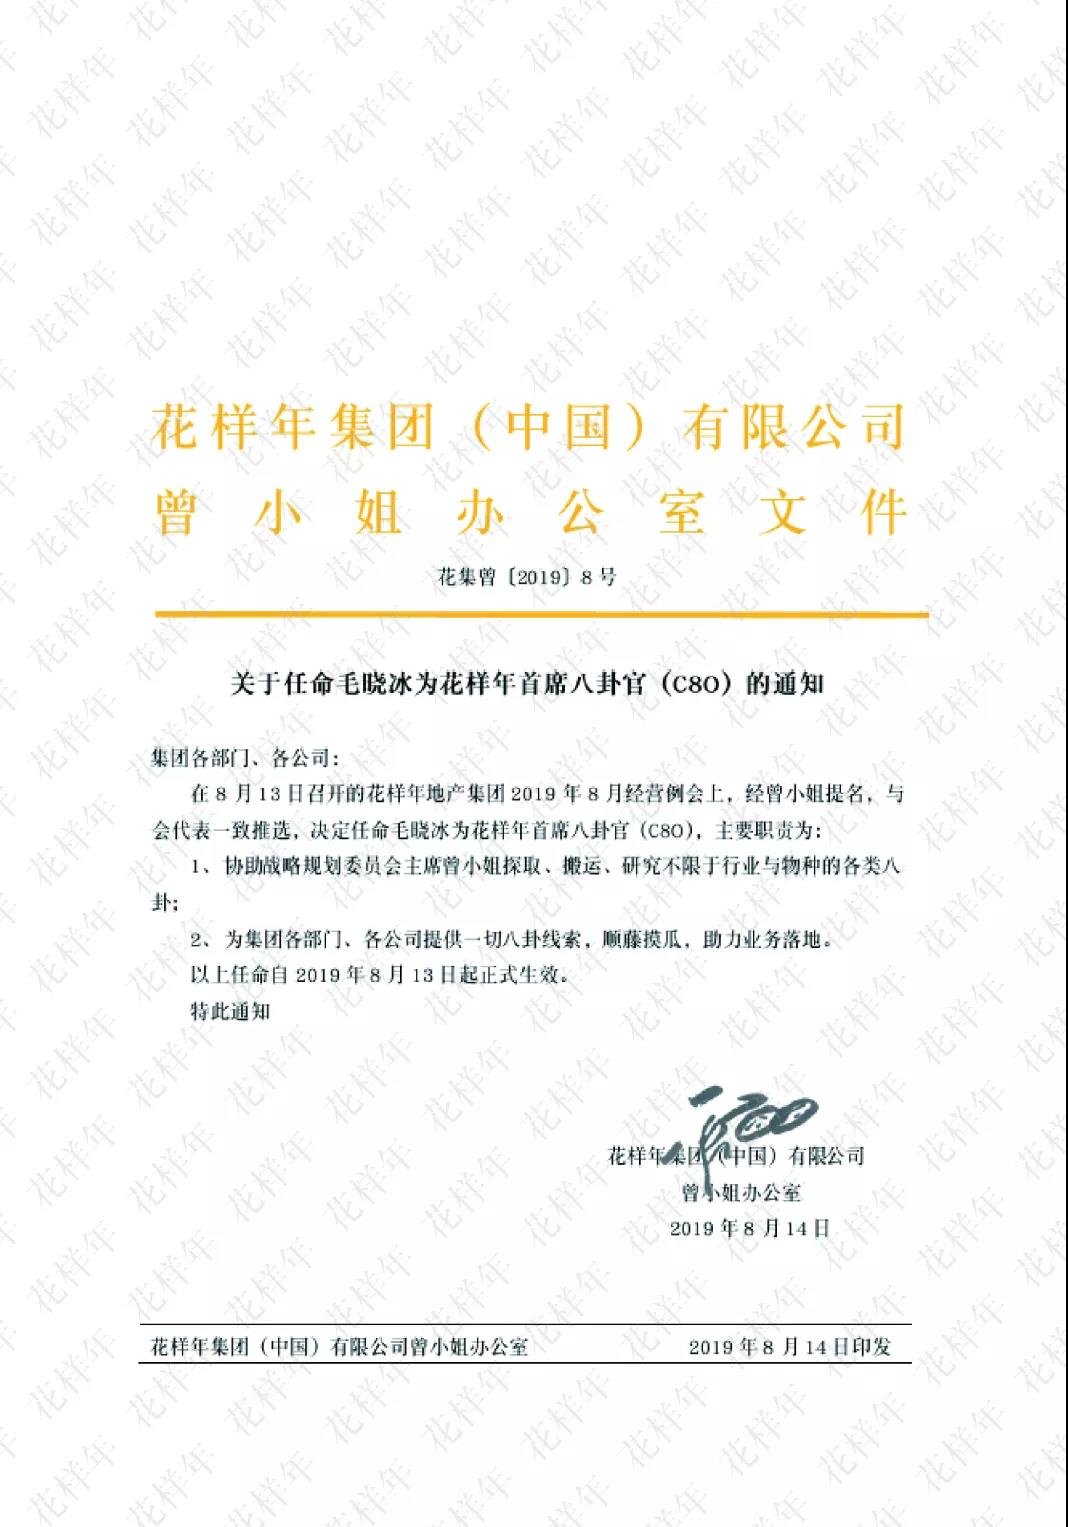 快讯|花样年官方确认首位C8O任命属实 与花样年品牌理念契合